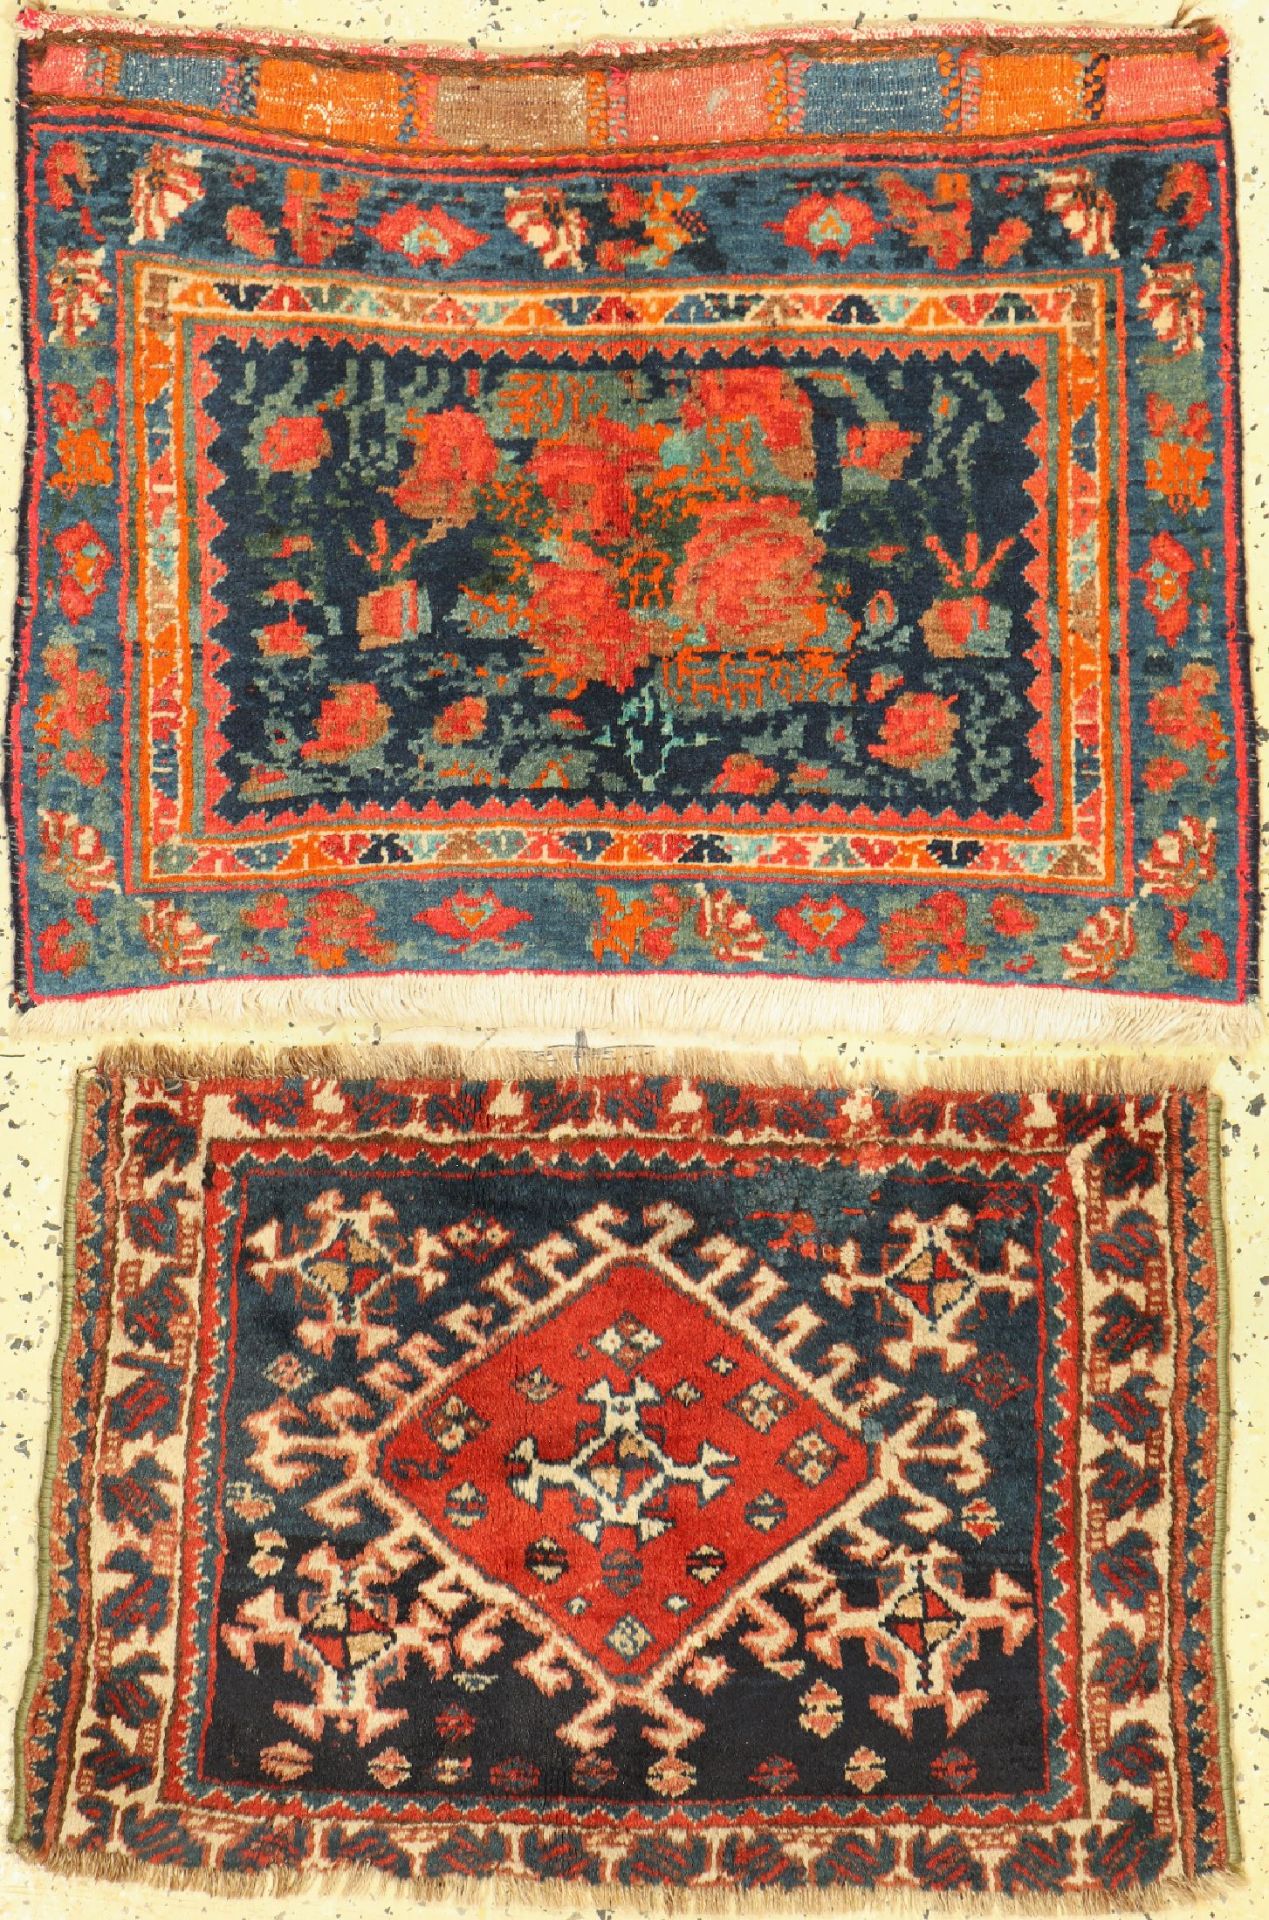 2 Taschenfront, Persien, um 1900, Wolle aufWolle, ca. 60